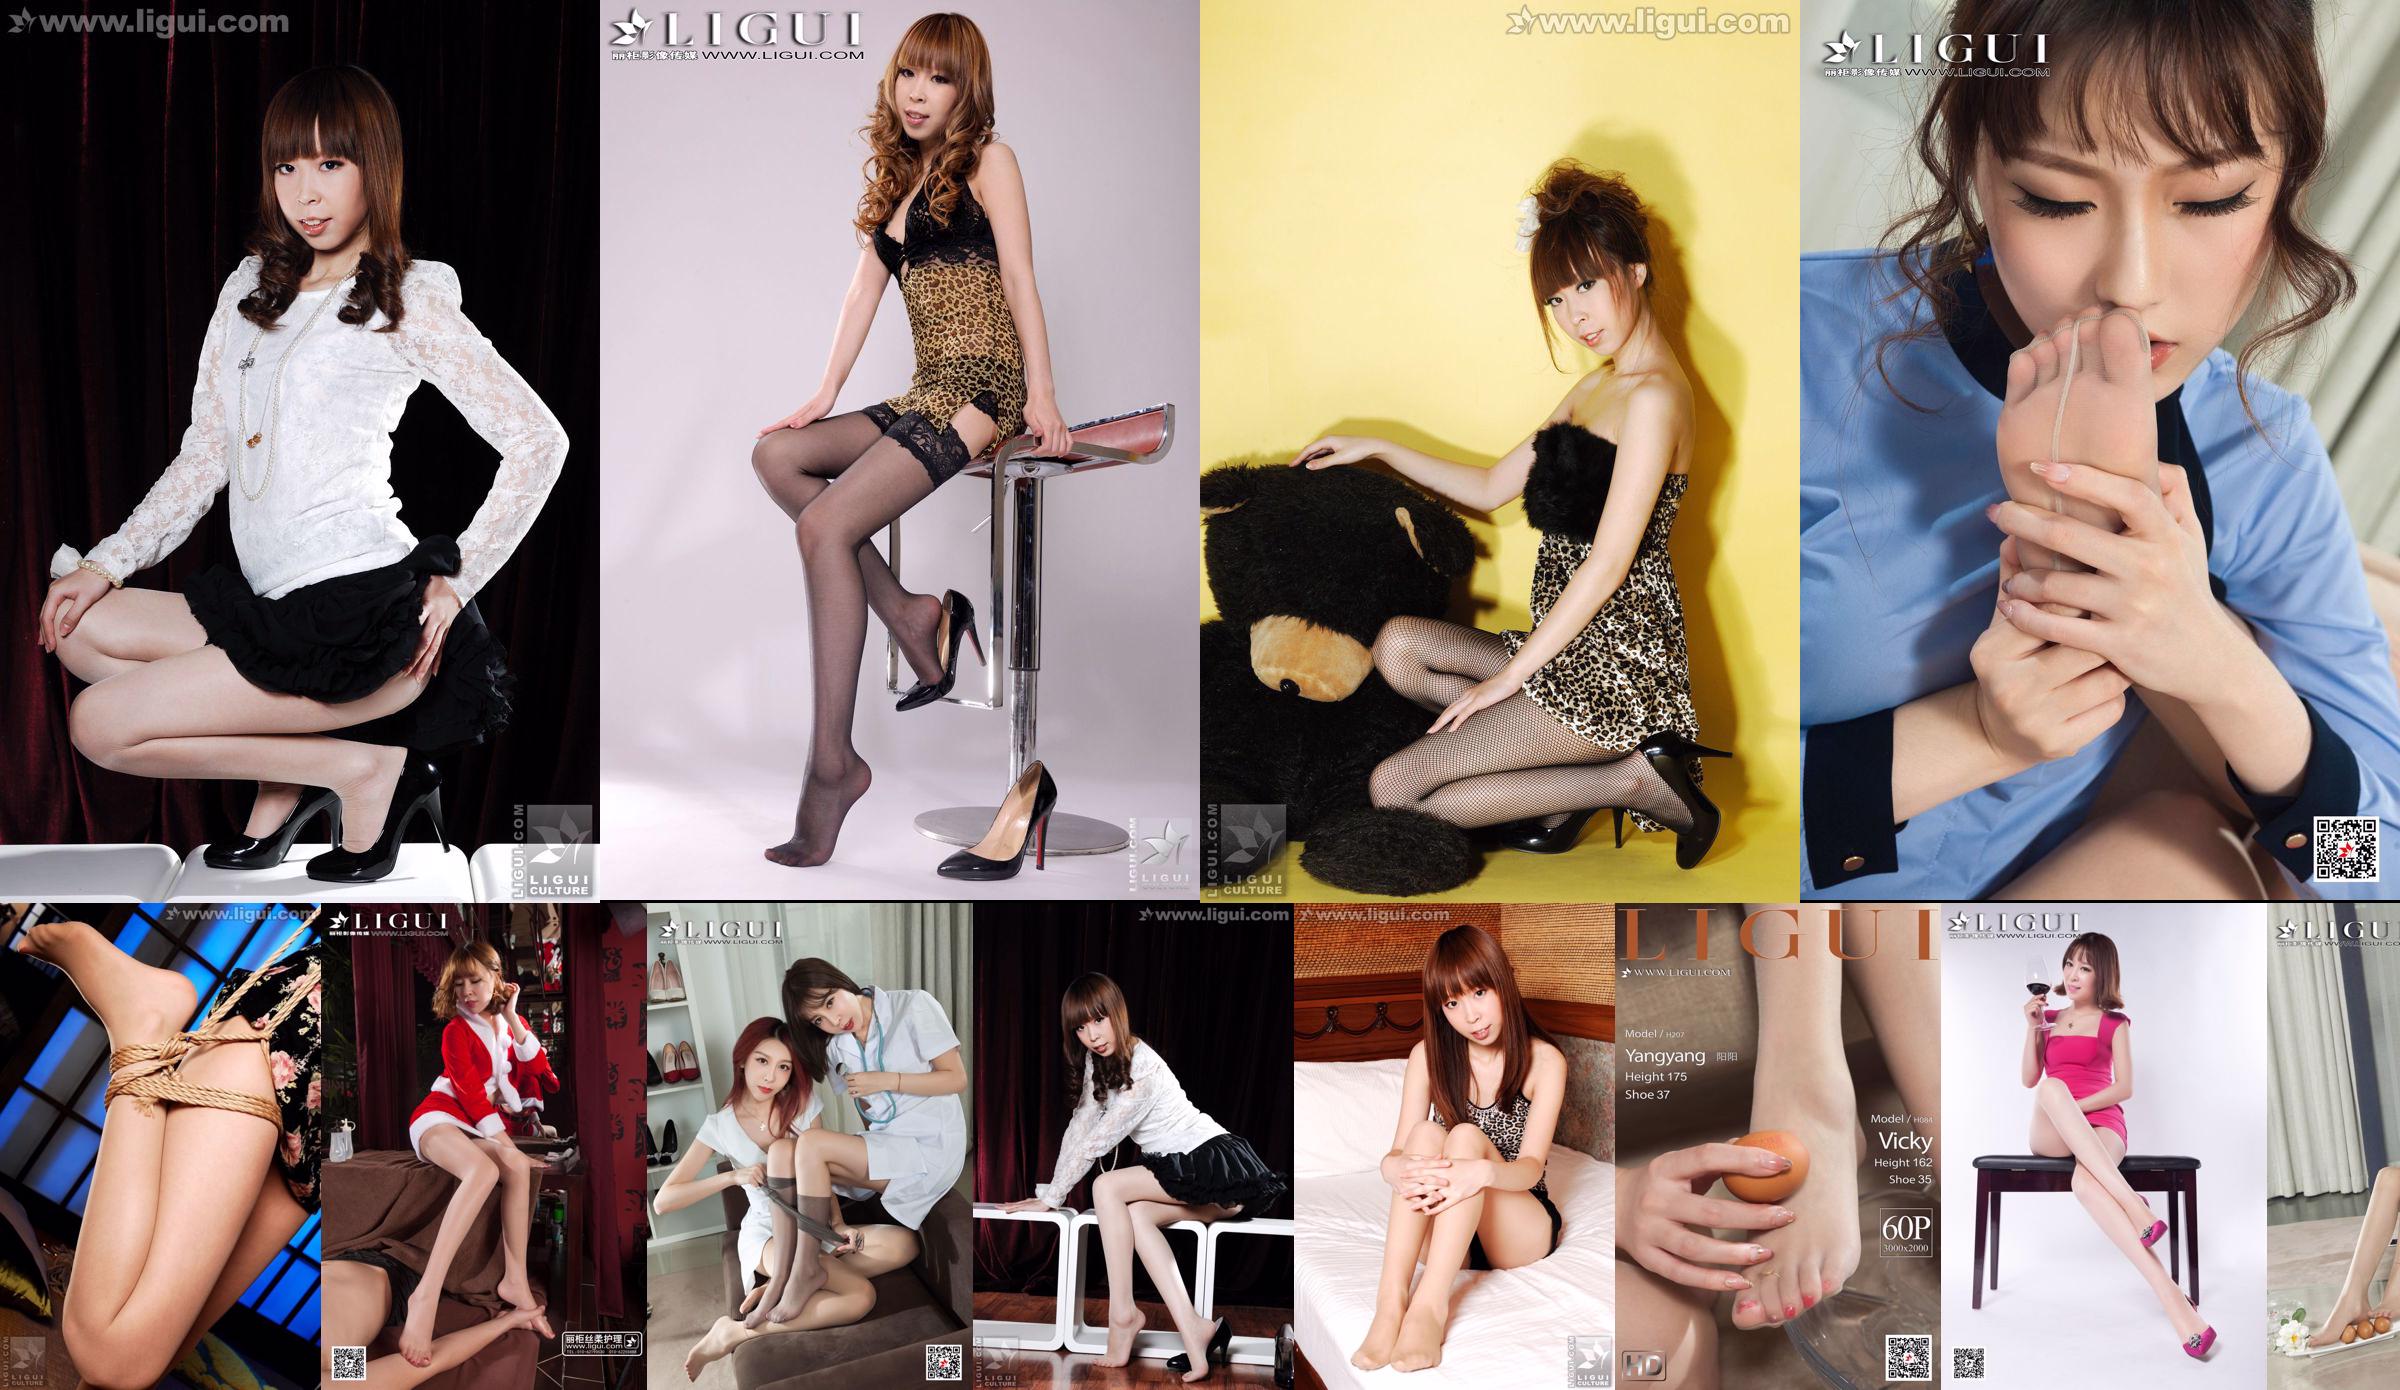 Người mẫu Vicky "Japanese Style: The Bound Girl" [LiGui] Ảnh chân dài xinh đẹp No.6704af Trang 1